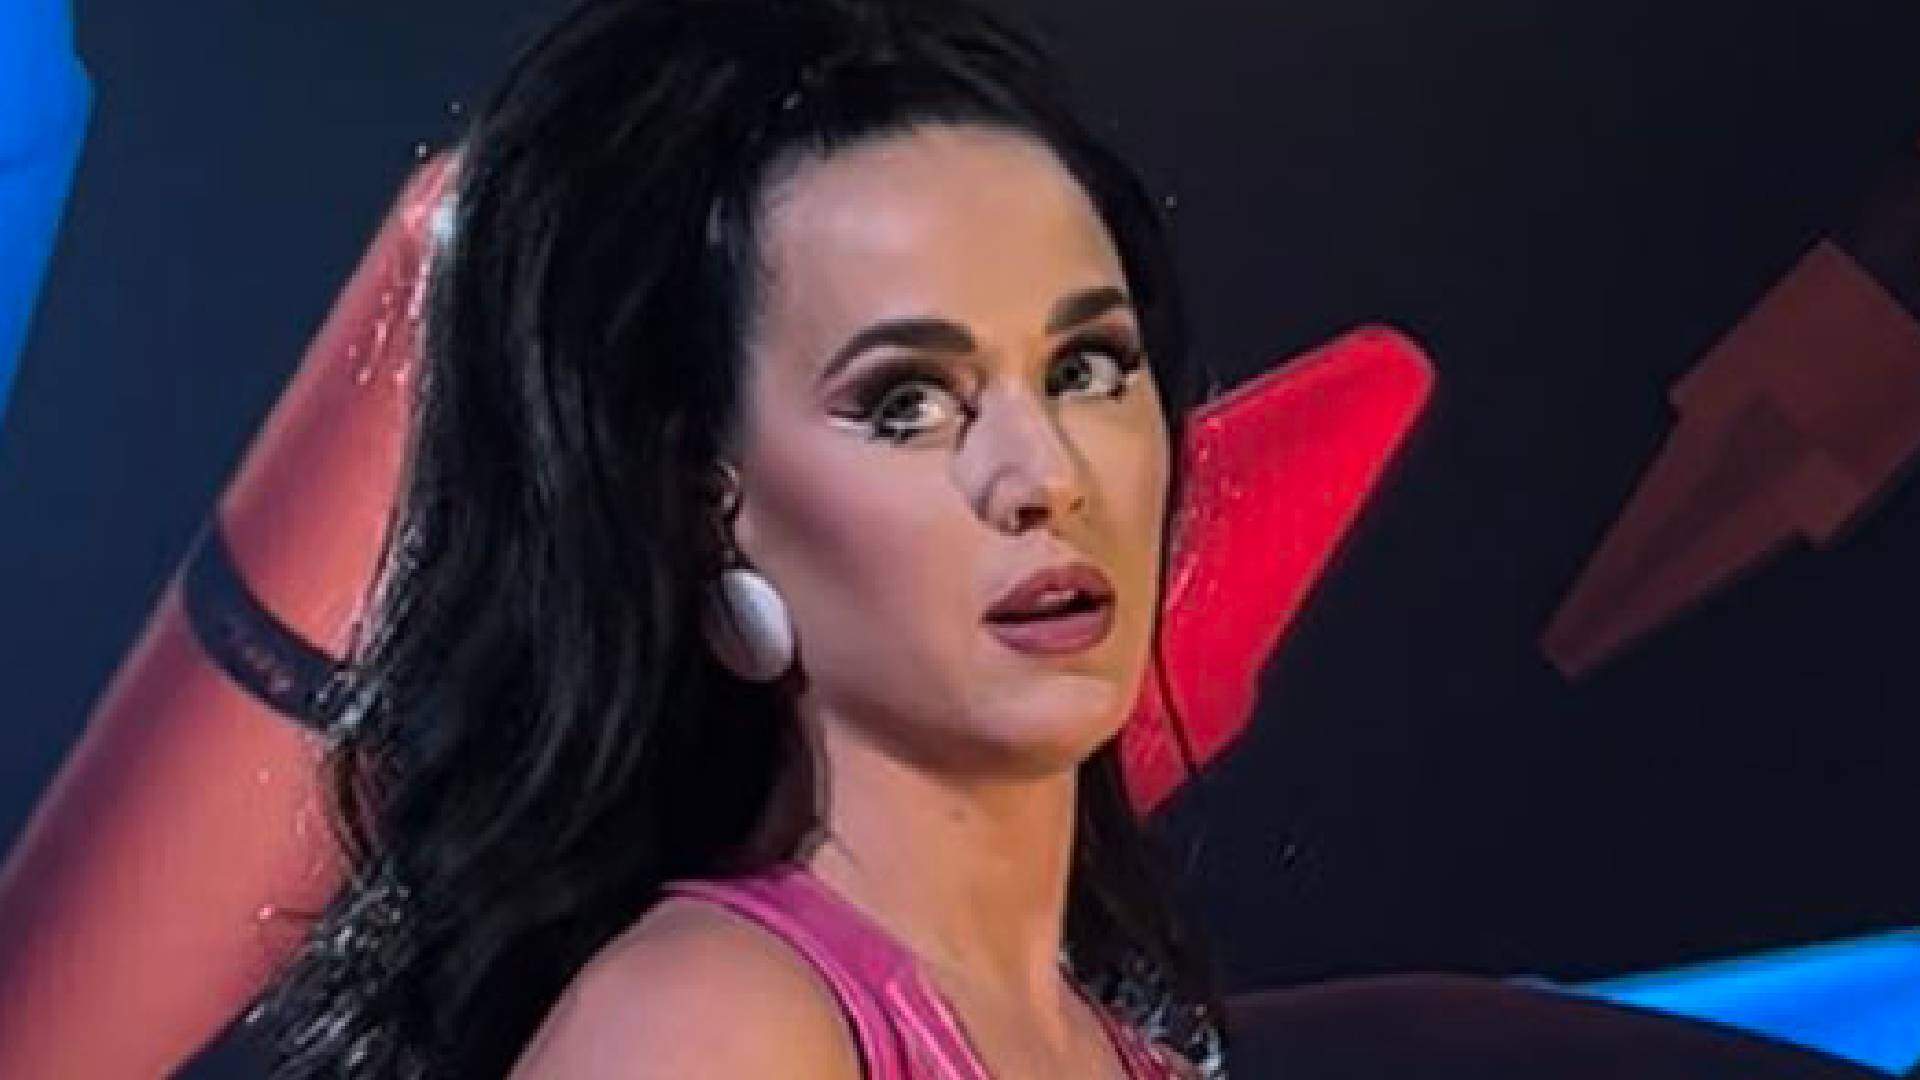 O que aconteceu com Katy Perry? Cantora passa por perrengue inusitado durante show e preocupa fãs - Metropolitana FM